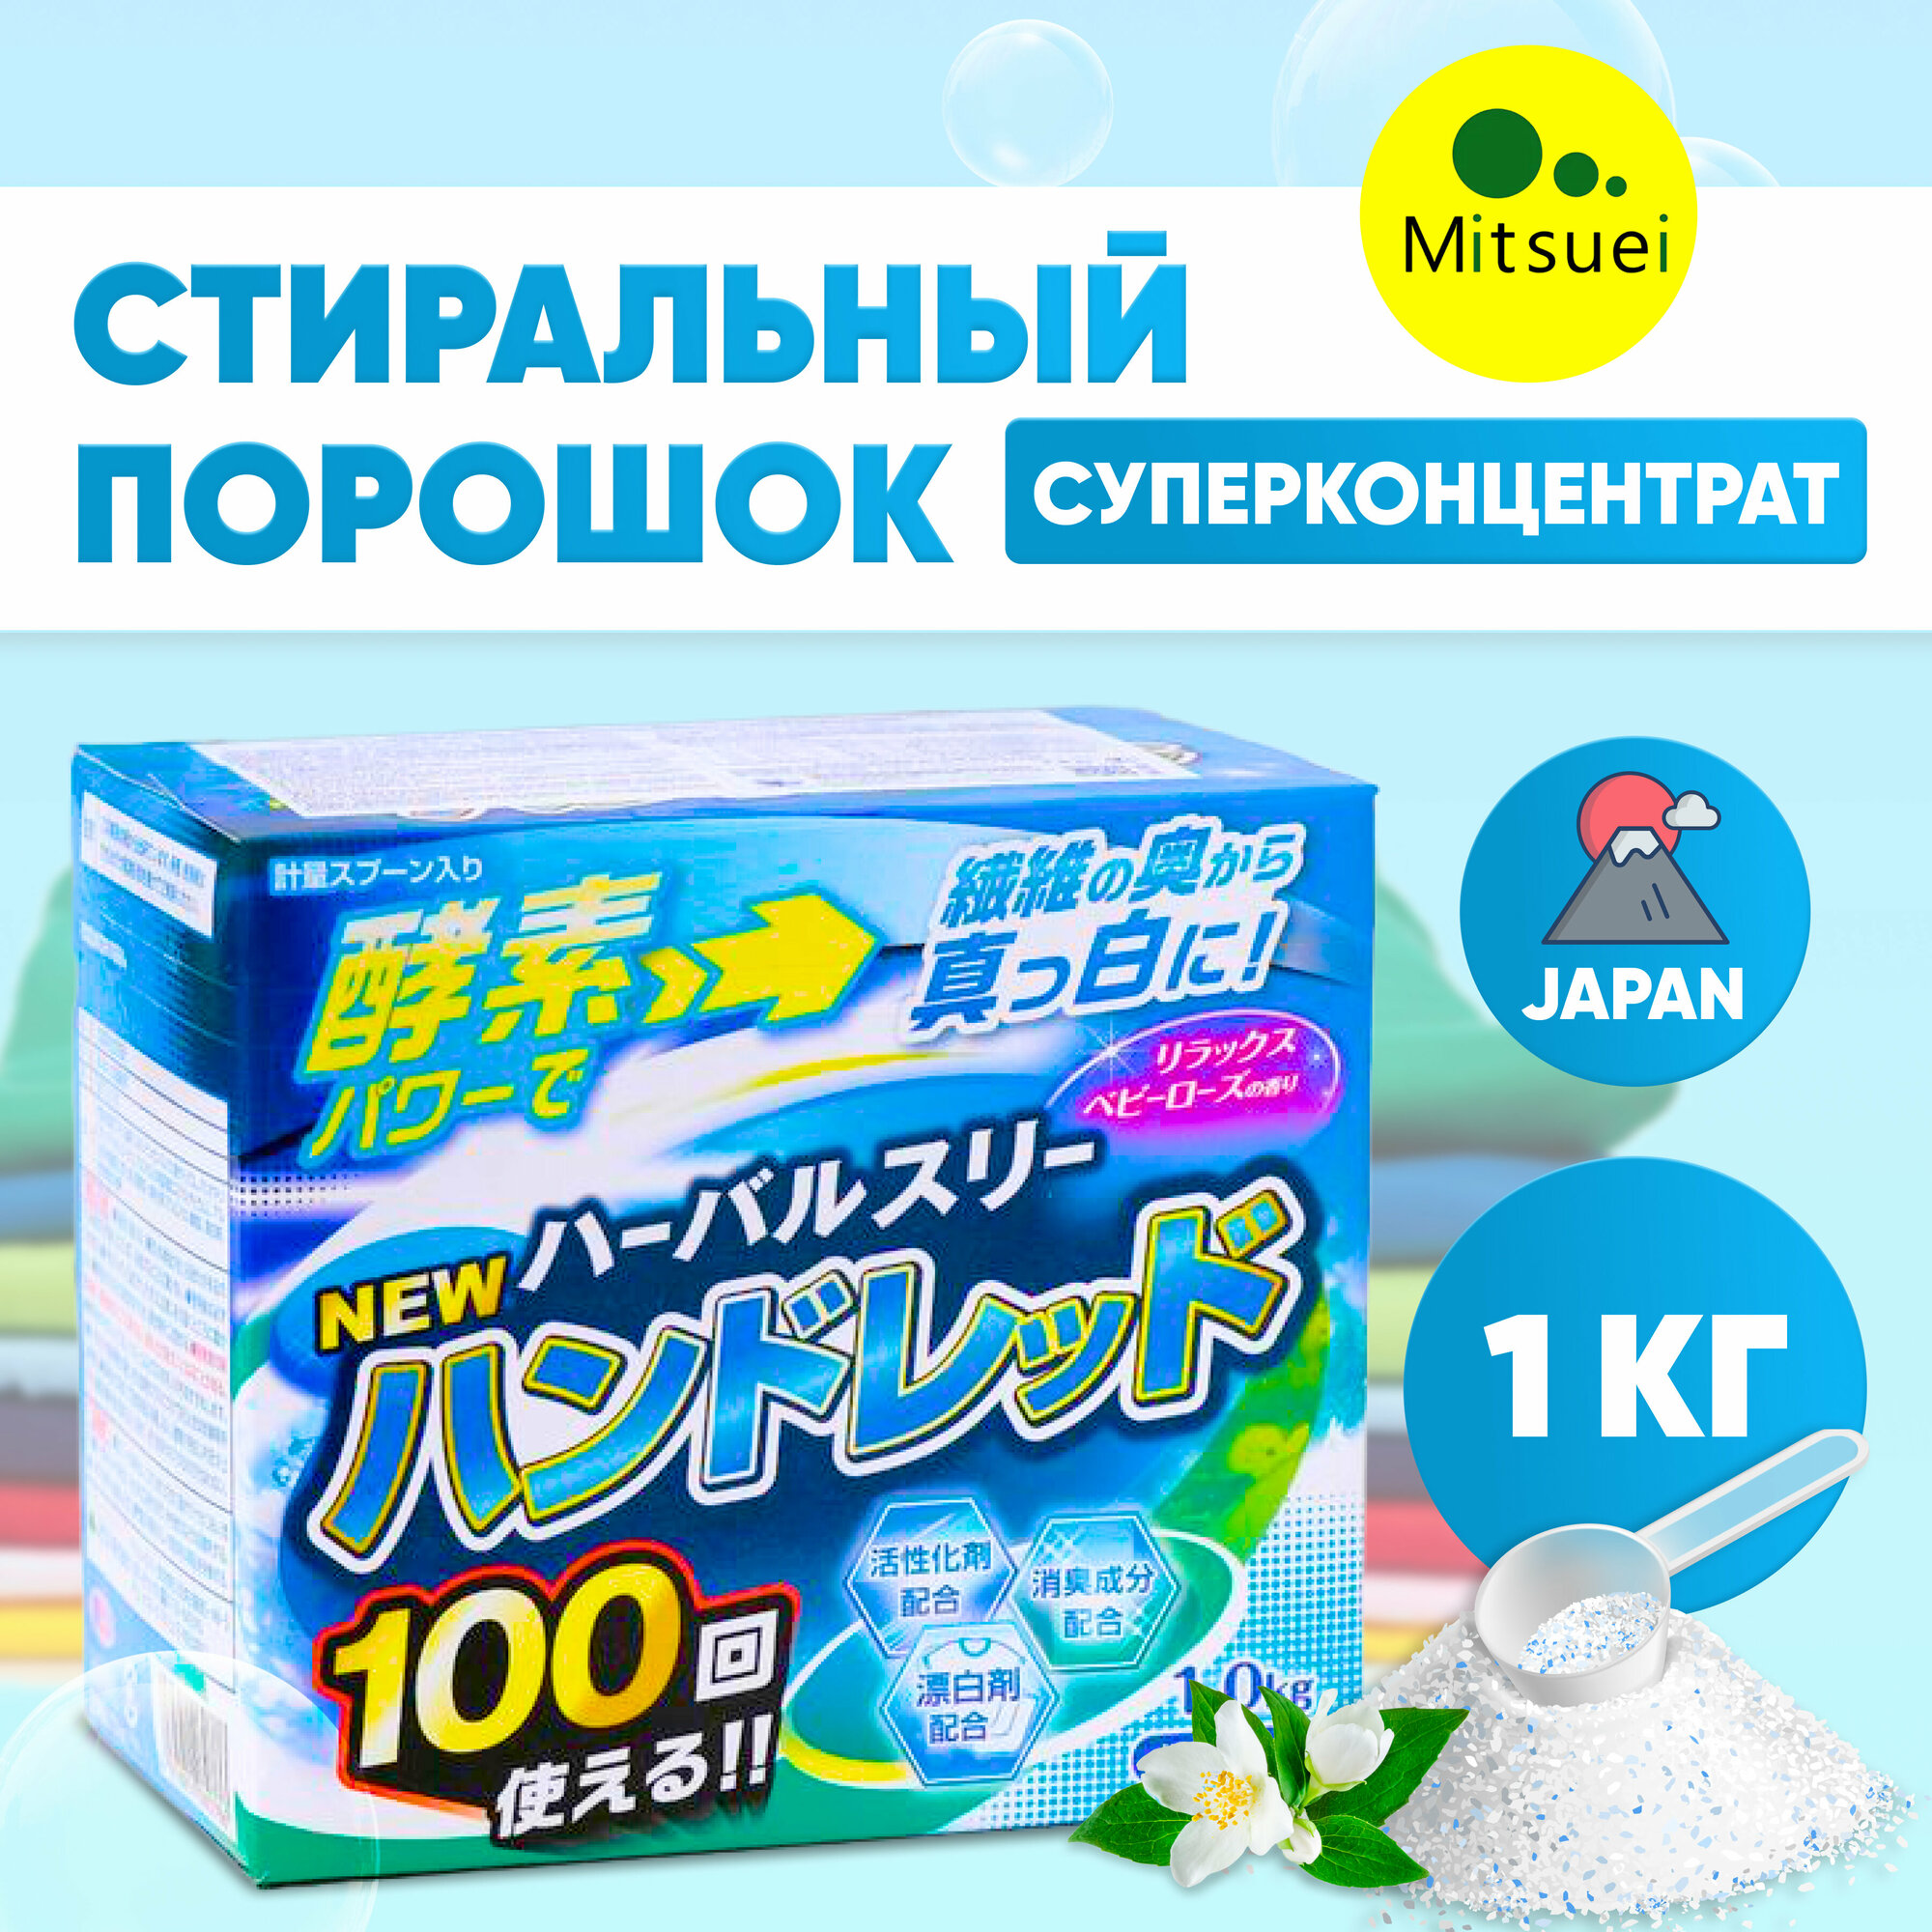 Mitsuei Японский стиральный порошок суперконцентрат Herbal Three "100 стирок" с дезодорирующими компонентами, отбеливателем и ферментами 1кг Япония